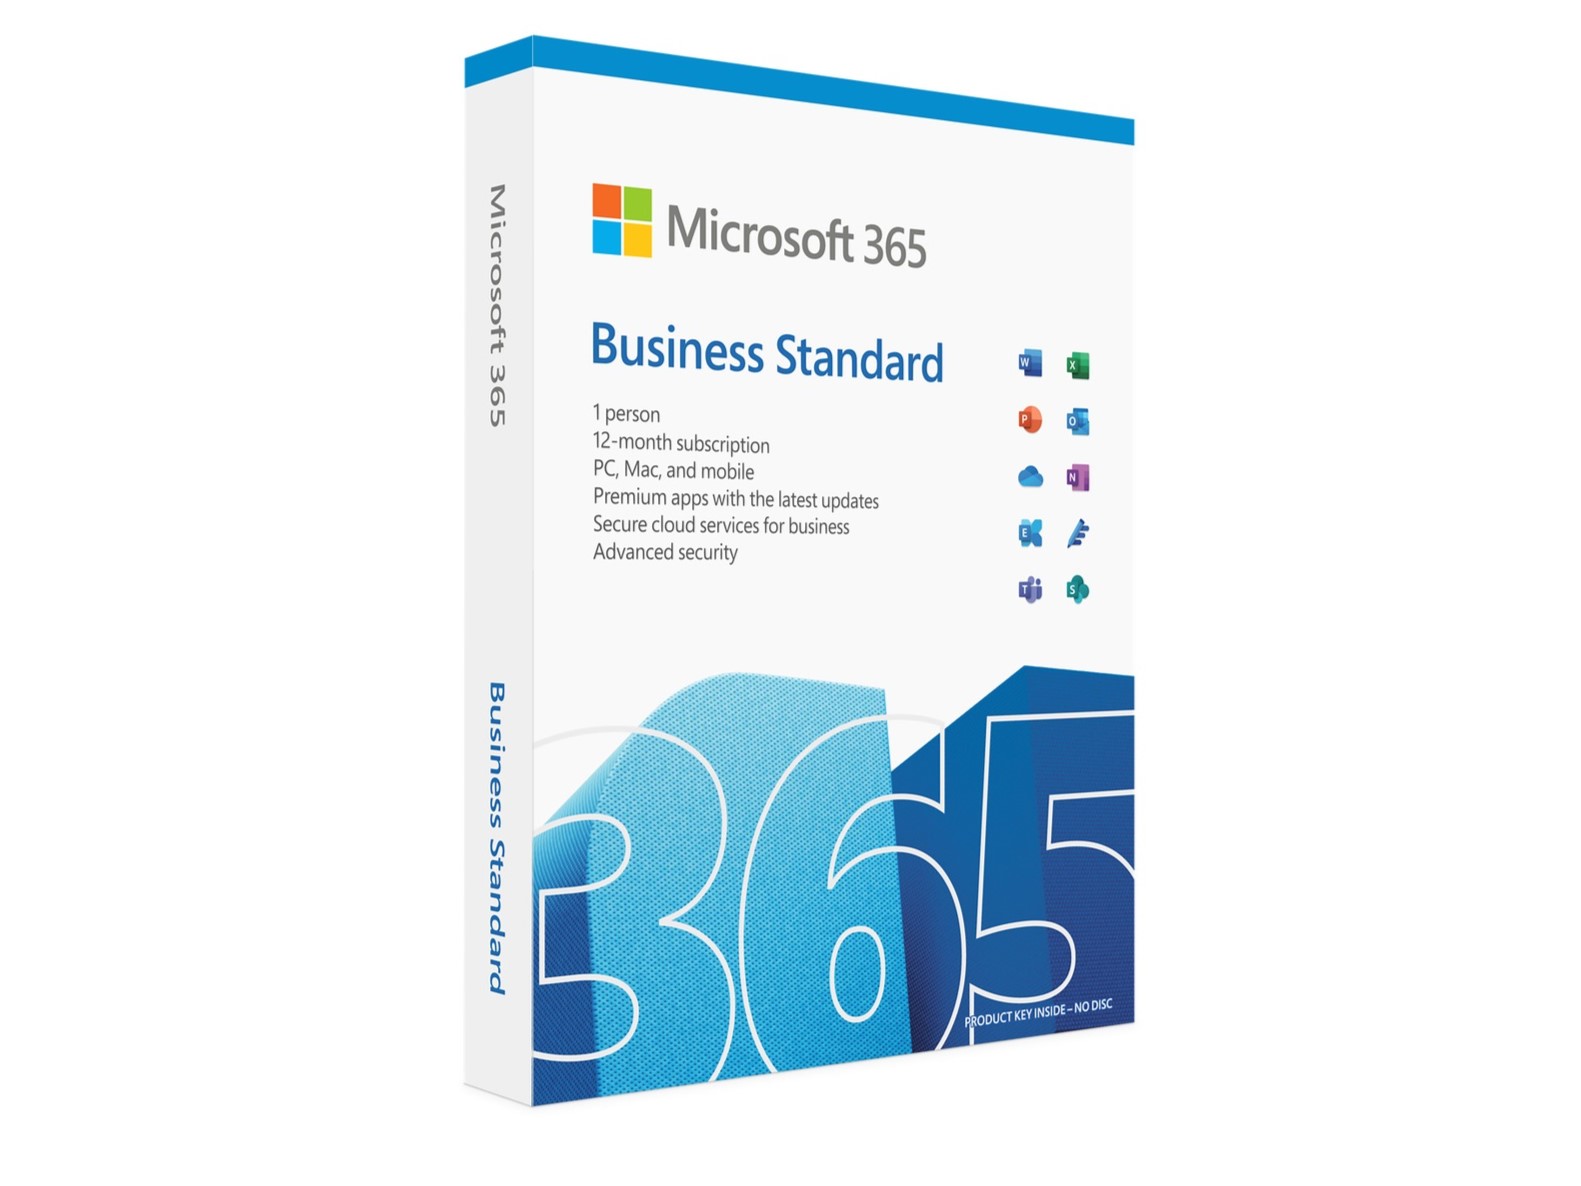 Microsoft 365 Business Standard product image box art.